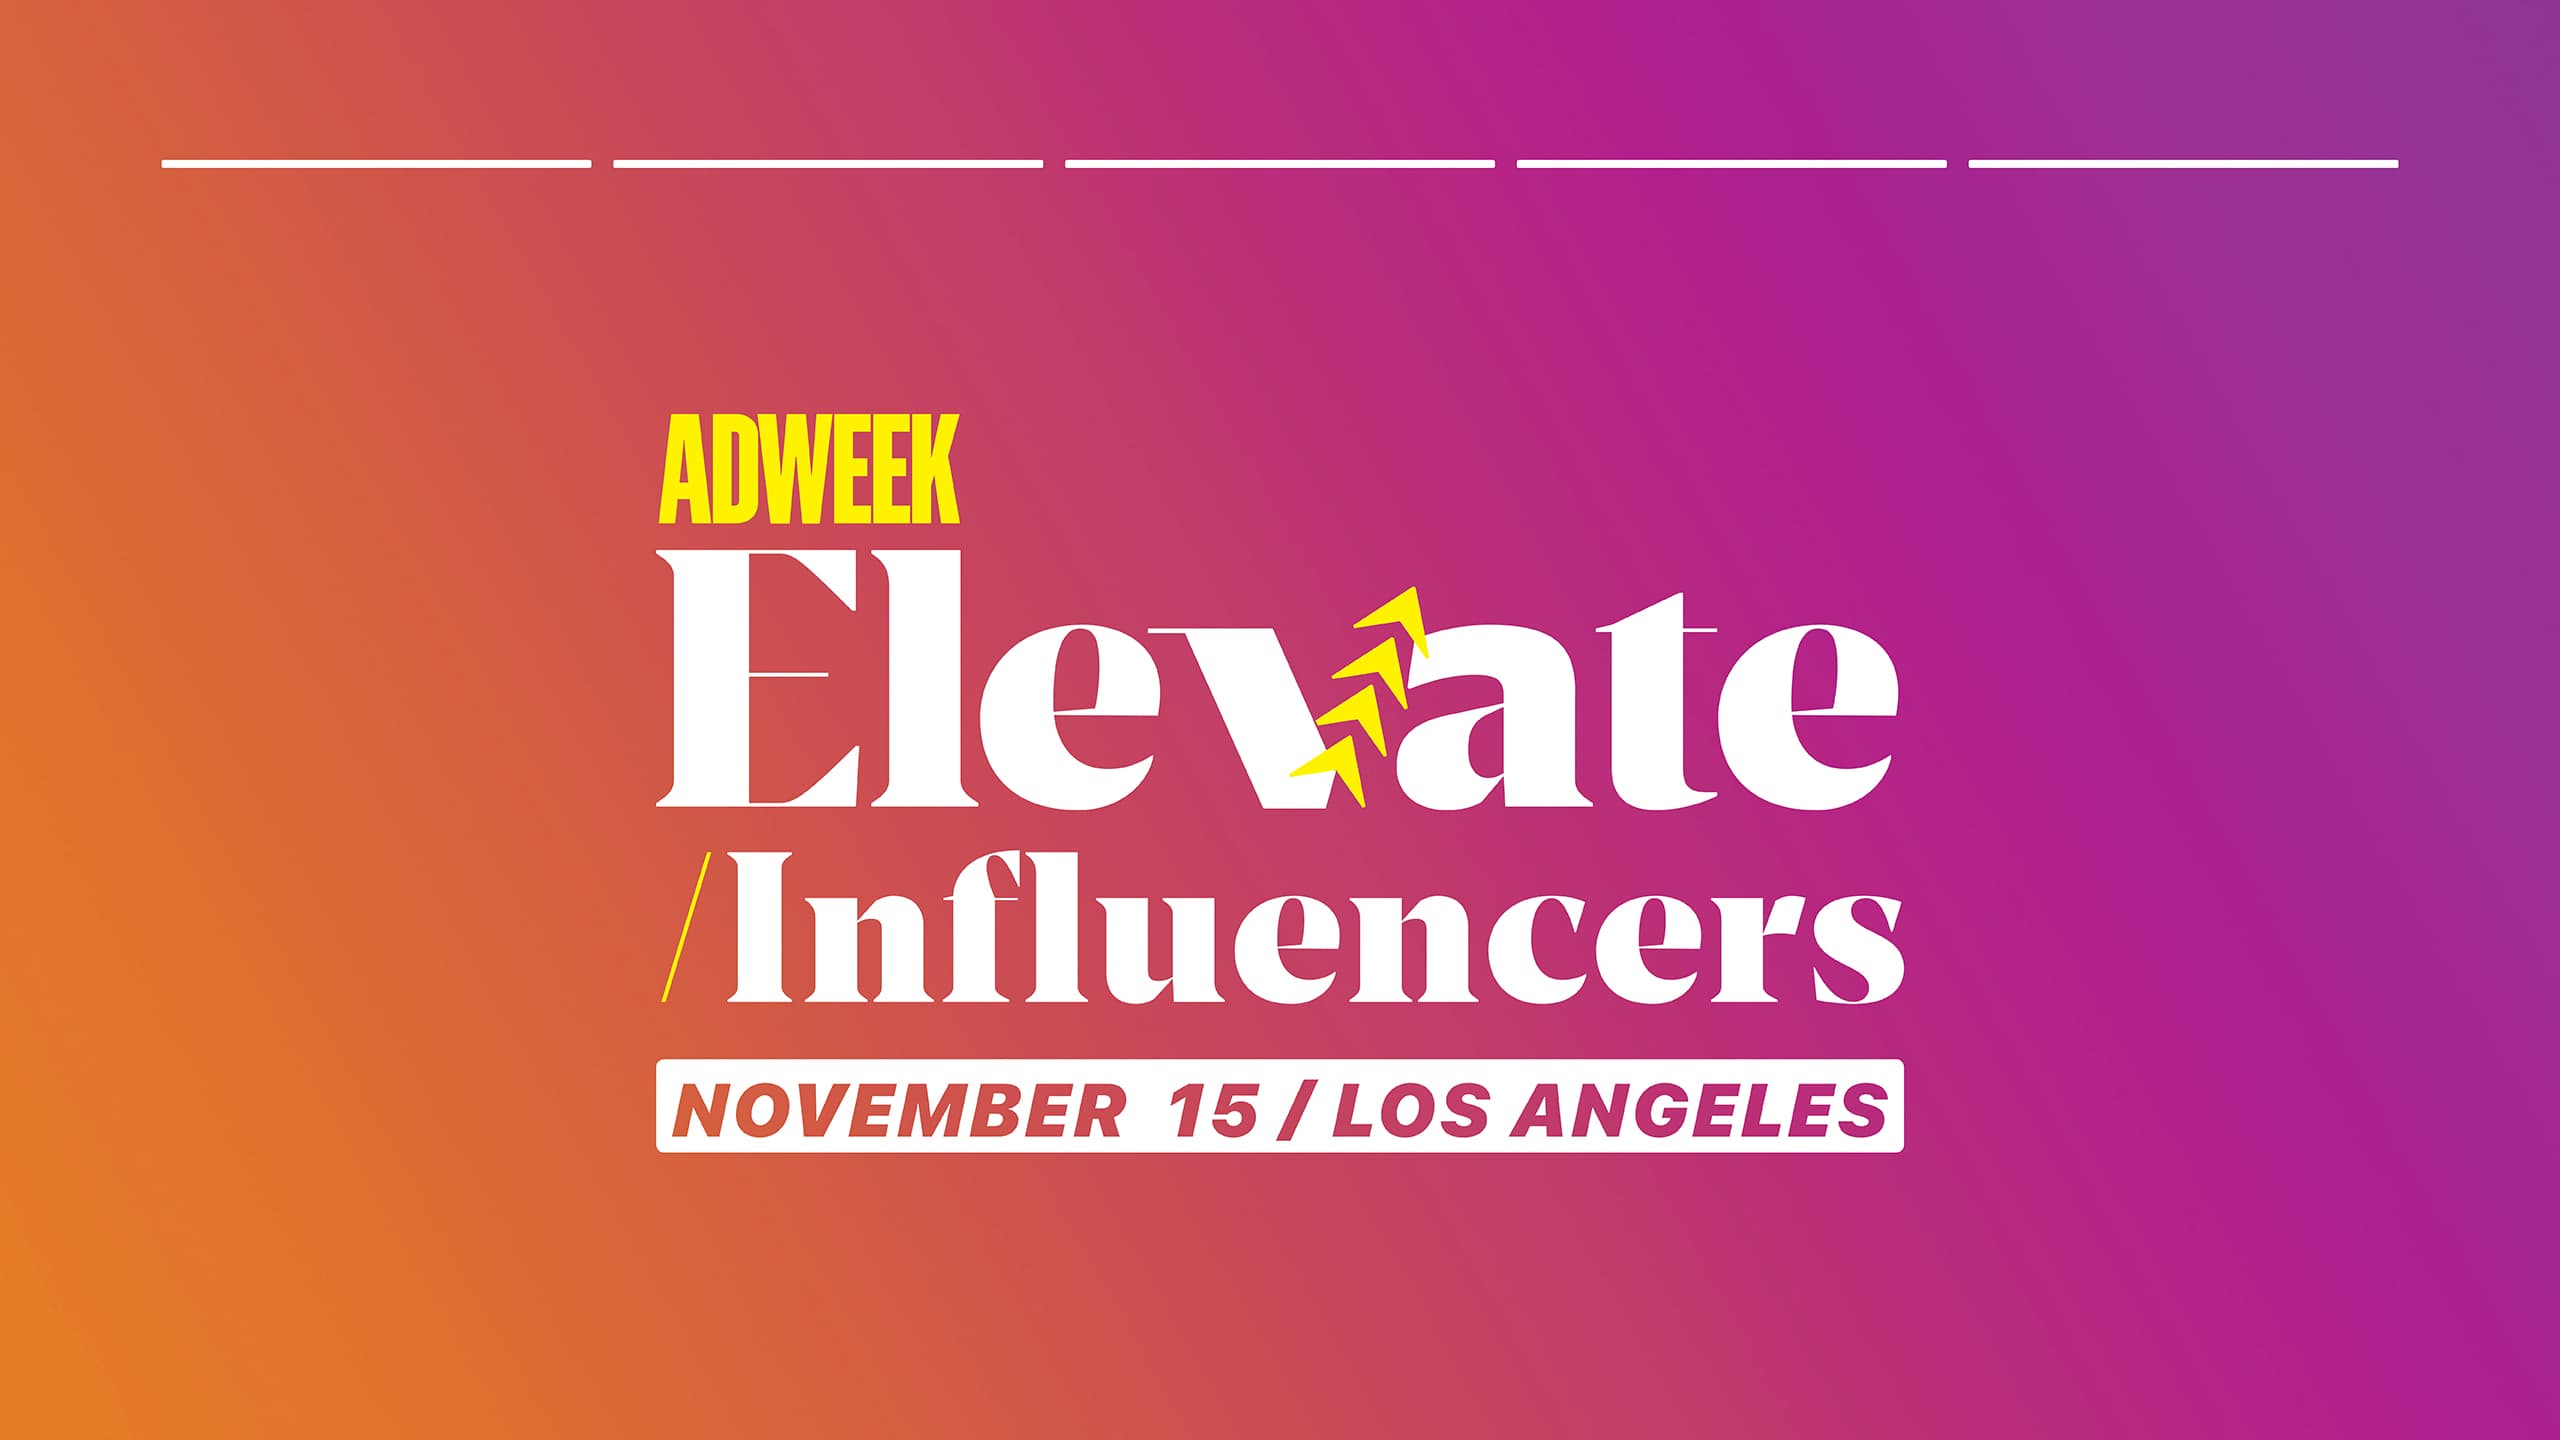 Adweek Elevate Influencers